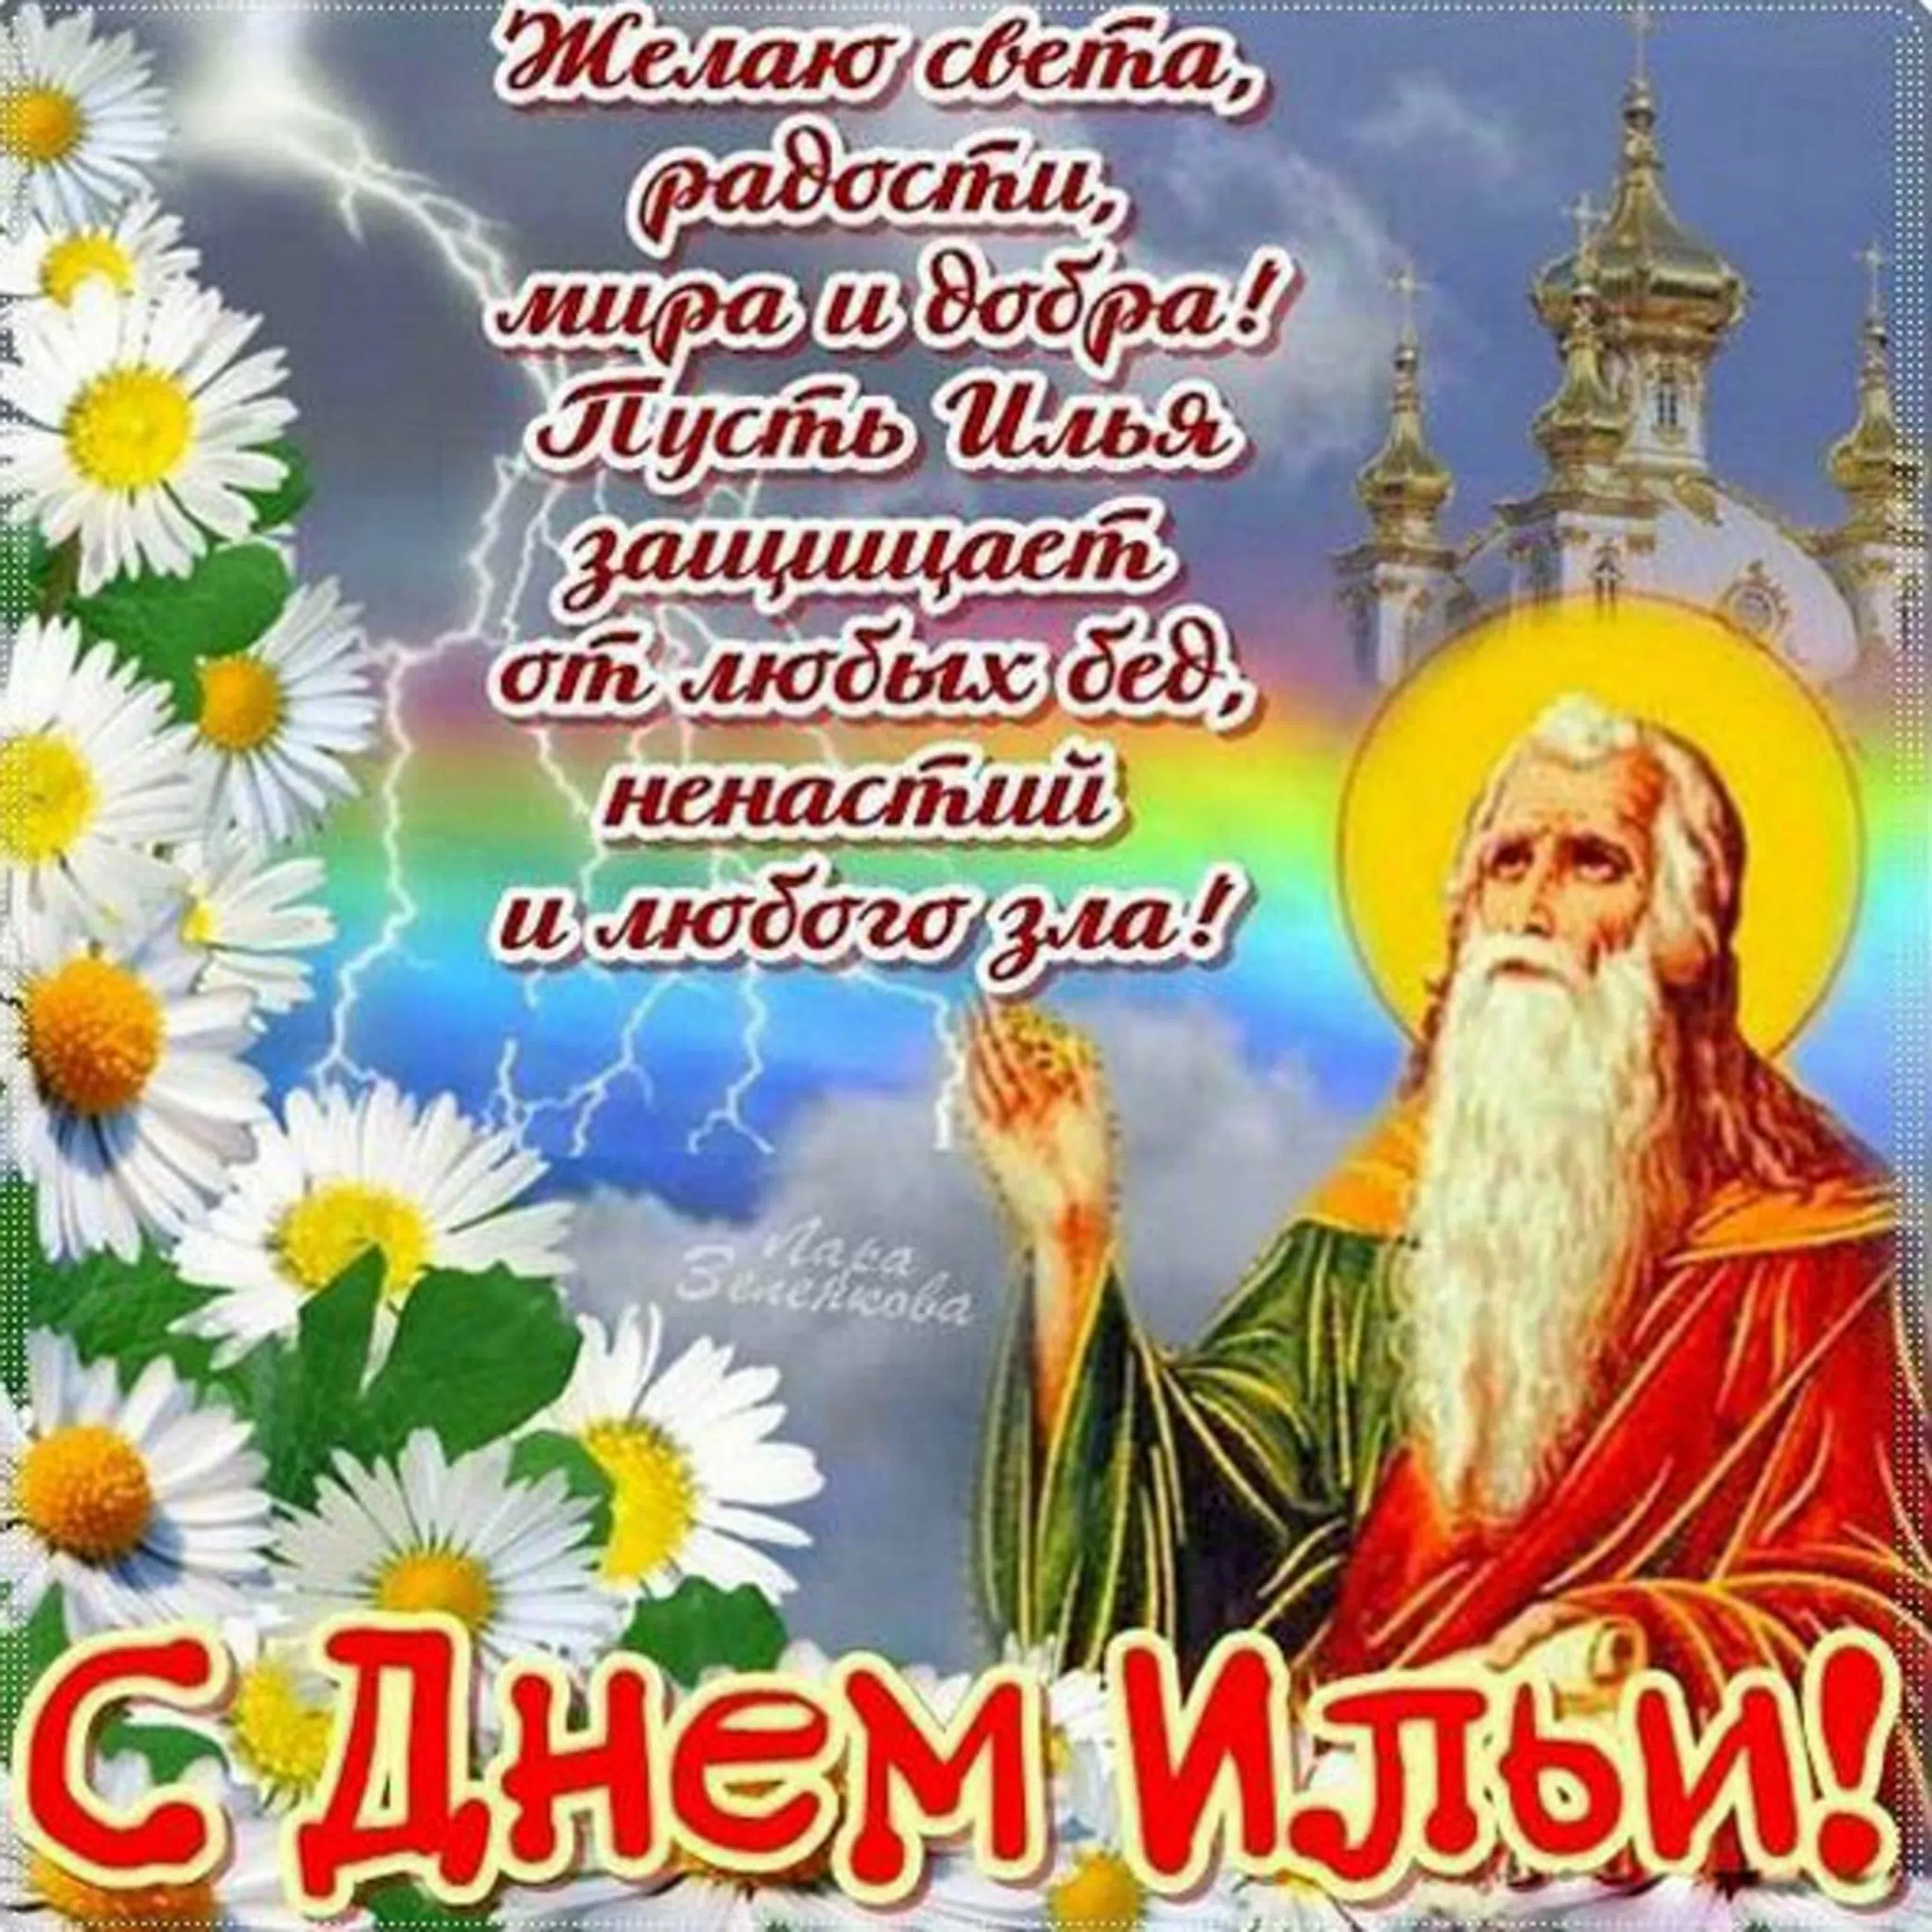 Илья пророк 2 августа